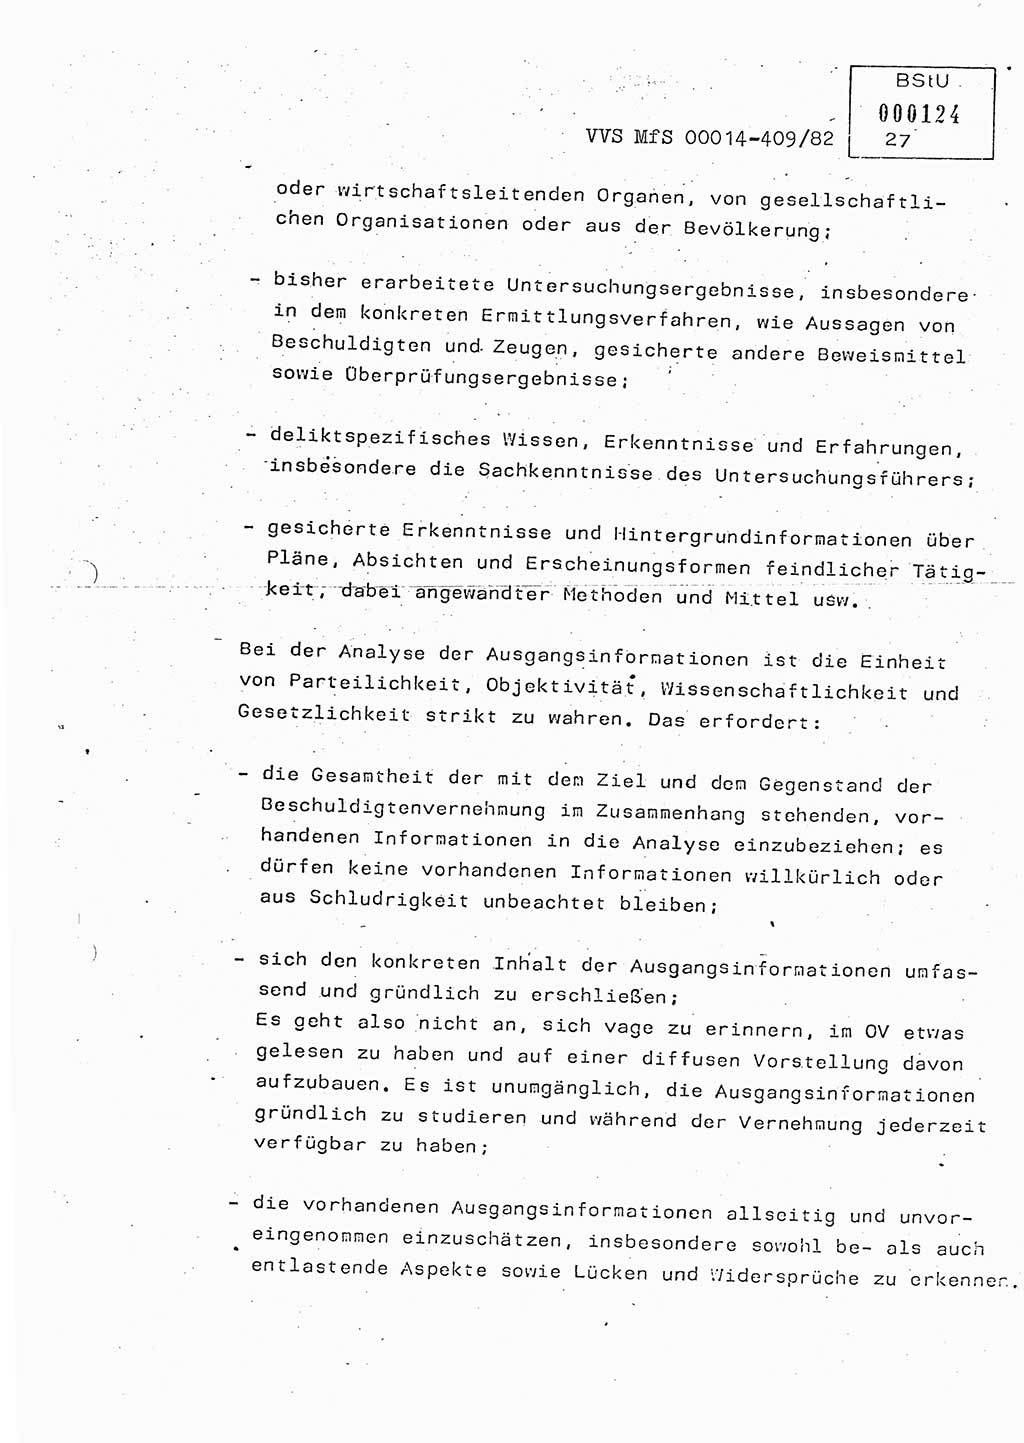 Lektion Ministerium für Staatssicherheit (MfS) [Deutsche Demokratische Republik (DDR)], Hauptabteilung (HA) Ⅸ, Vertrauliche Verschlußsache (VVS) o014-409/82, Berlin 1982, Seite 27 (Lekt. MfS DDR HA Ⅸ VVS o014-409/82 1982, S. 27)